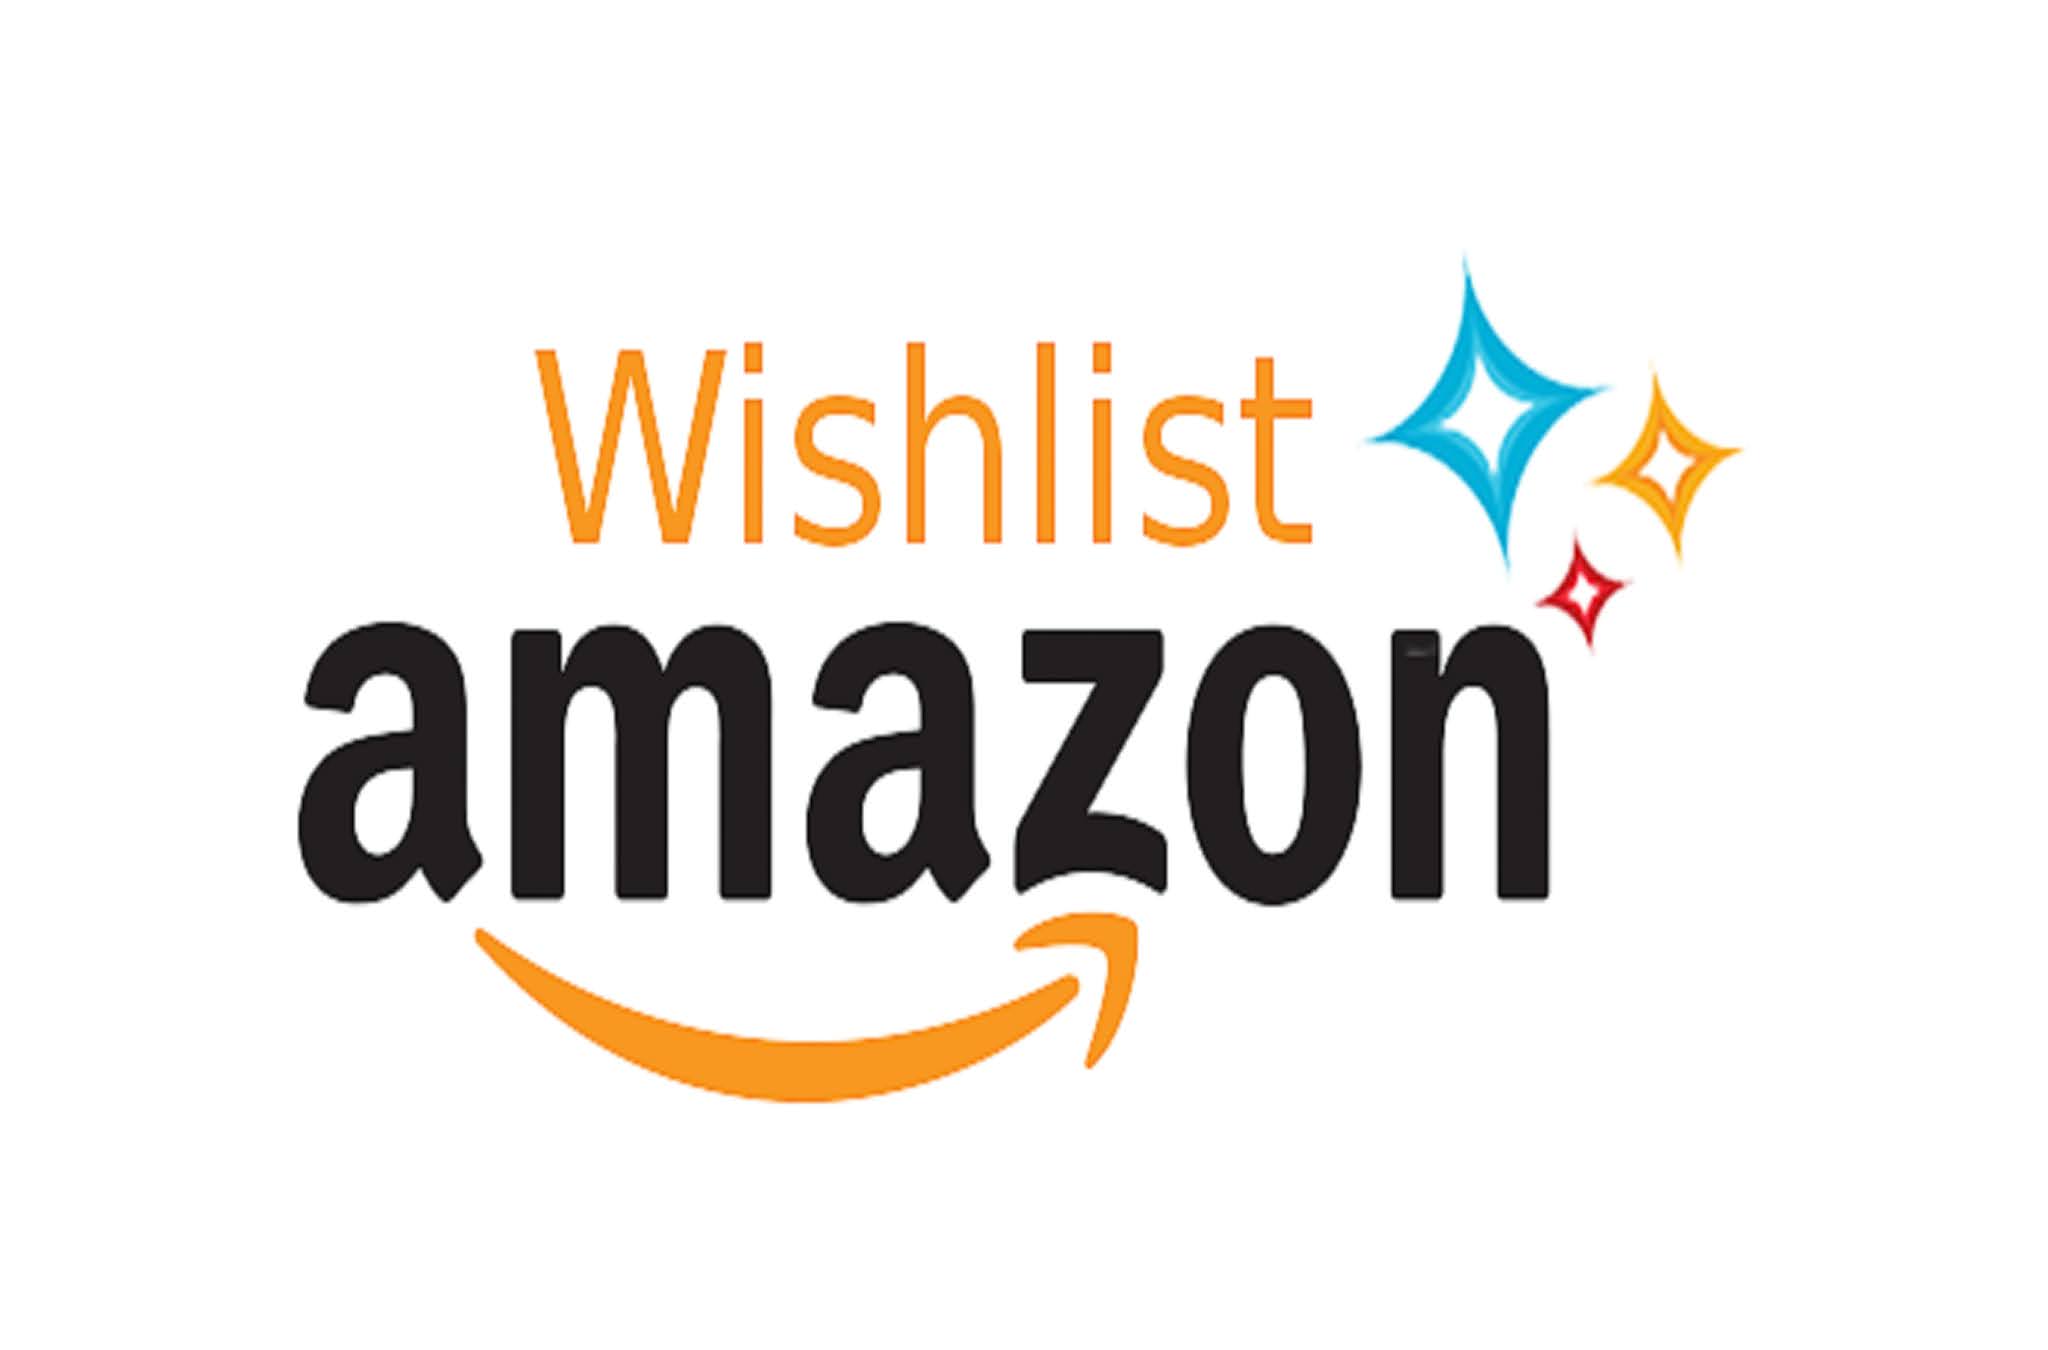 Amazon Wishlist